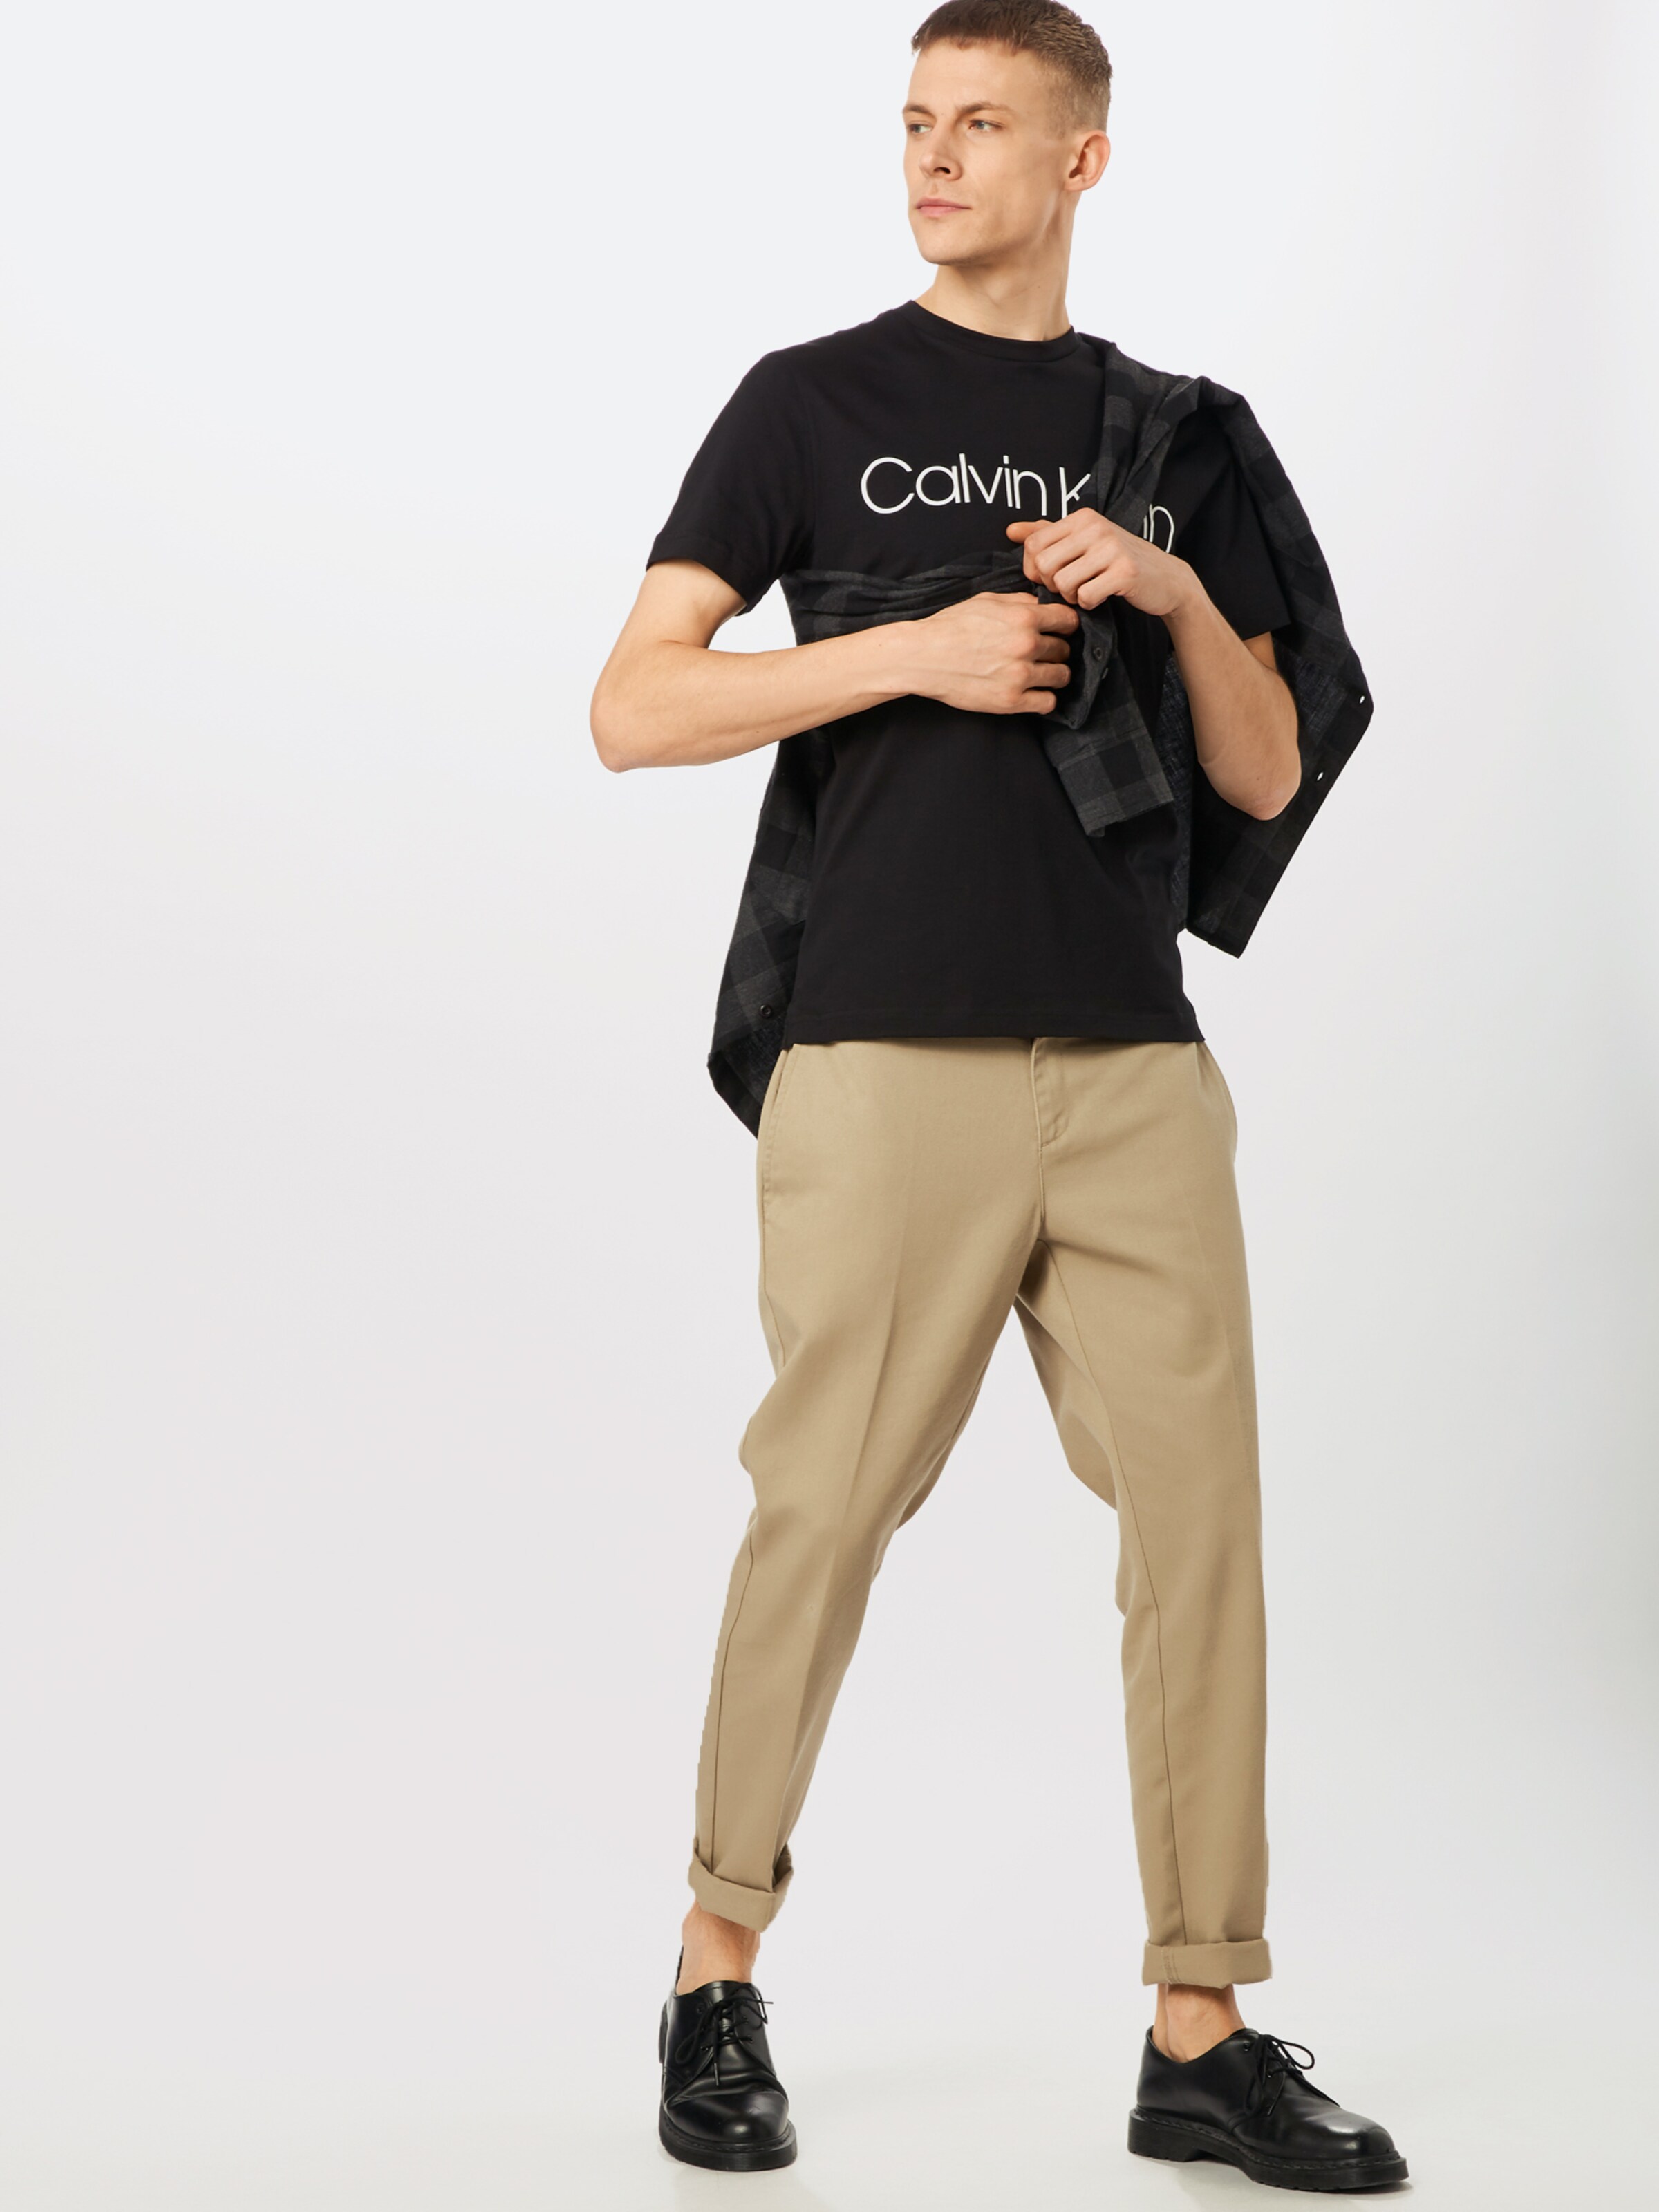 Männer Shirts Calvin Klein Shirt in Schwarz - ZZ31658